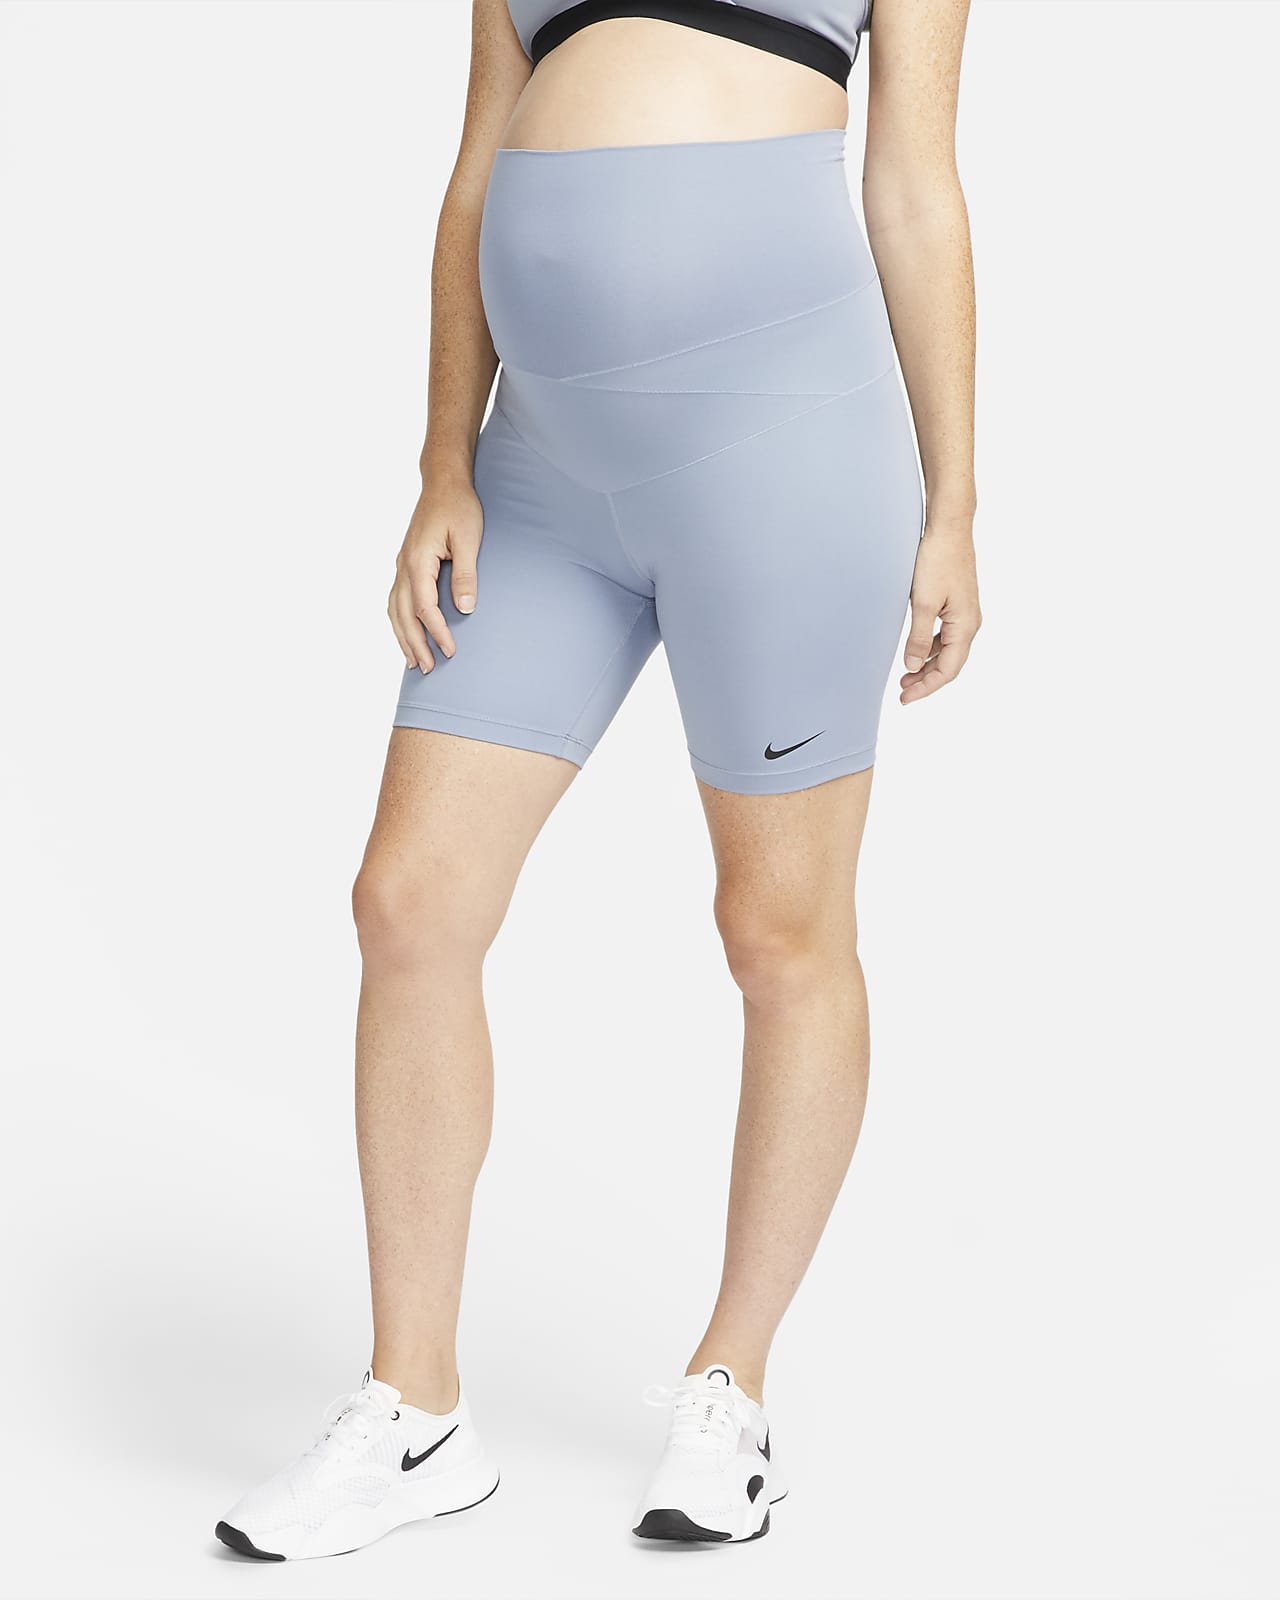 Cycliste Nike One (M) 18 cm pour femme (maternité)